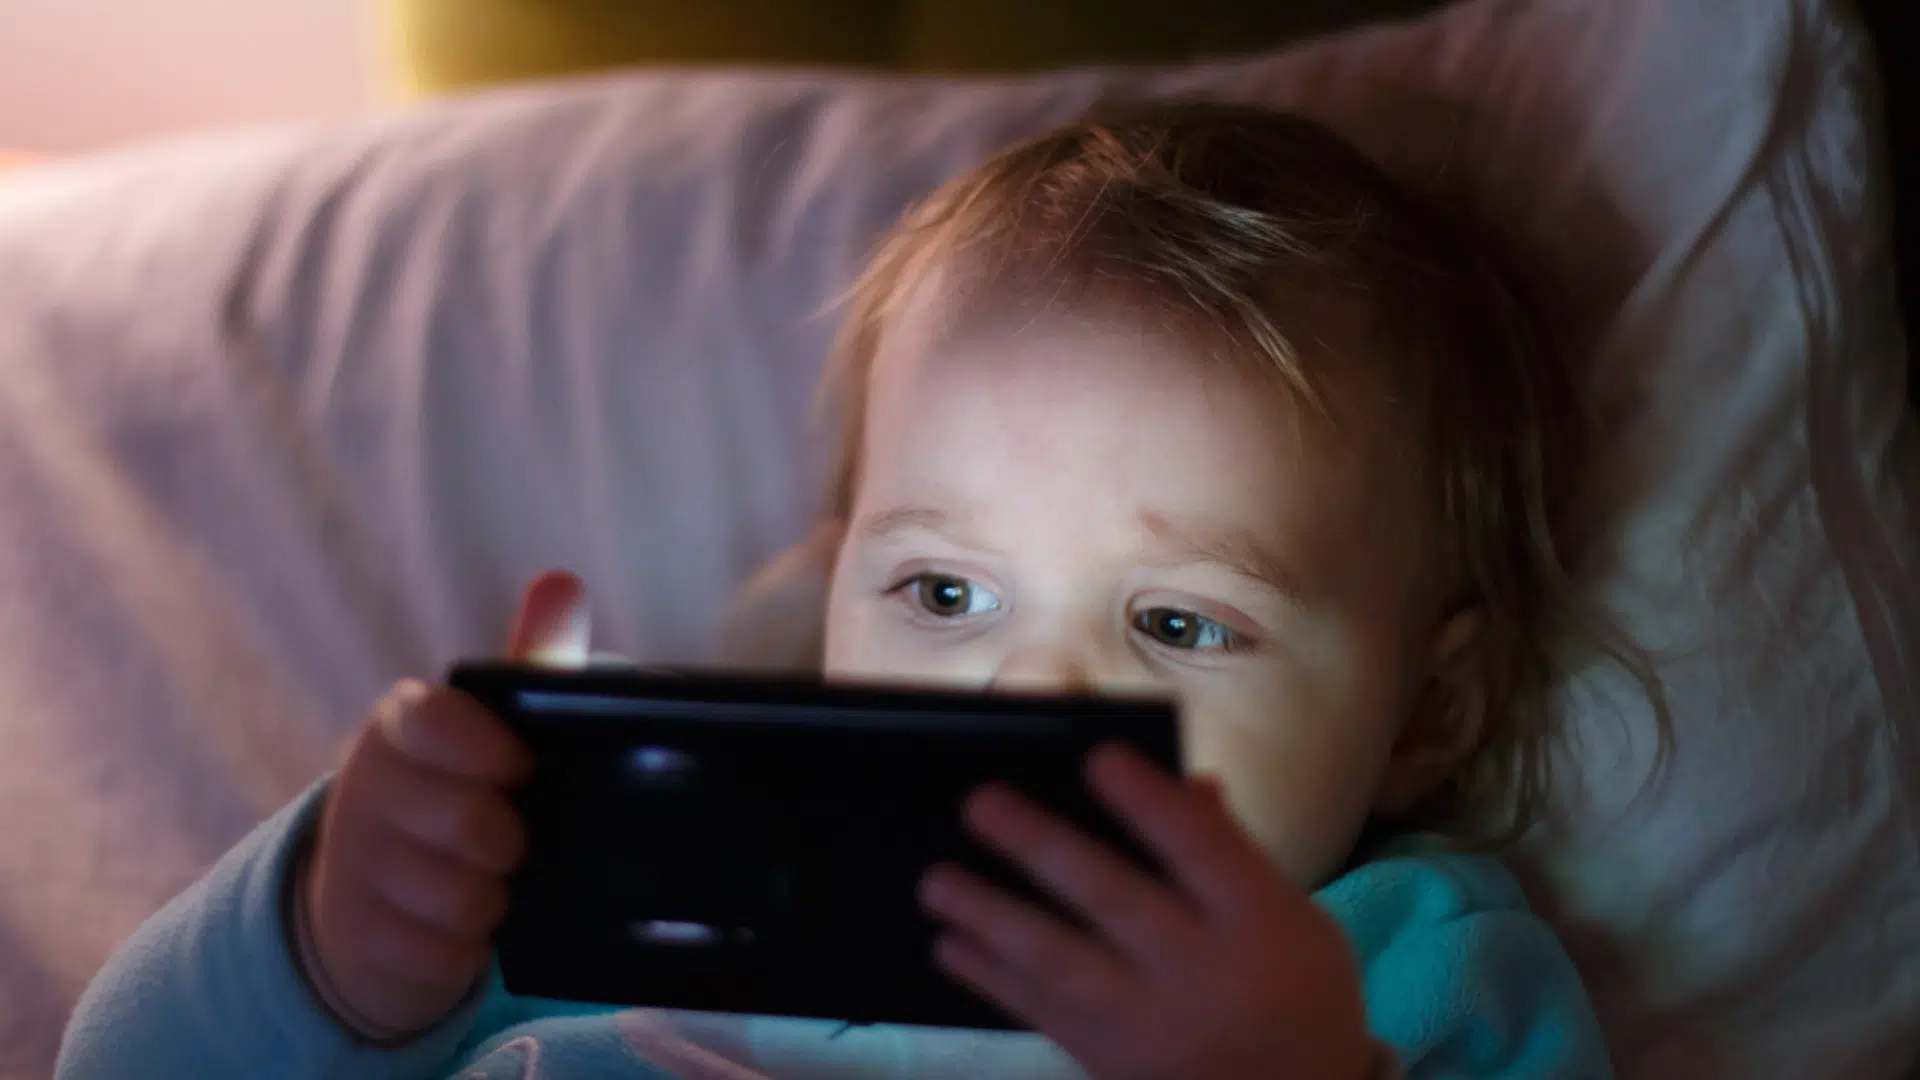 Projet de loi : vers une interdiction stricte des écrans pour les enfants de moins de 3 ans en crèche